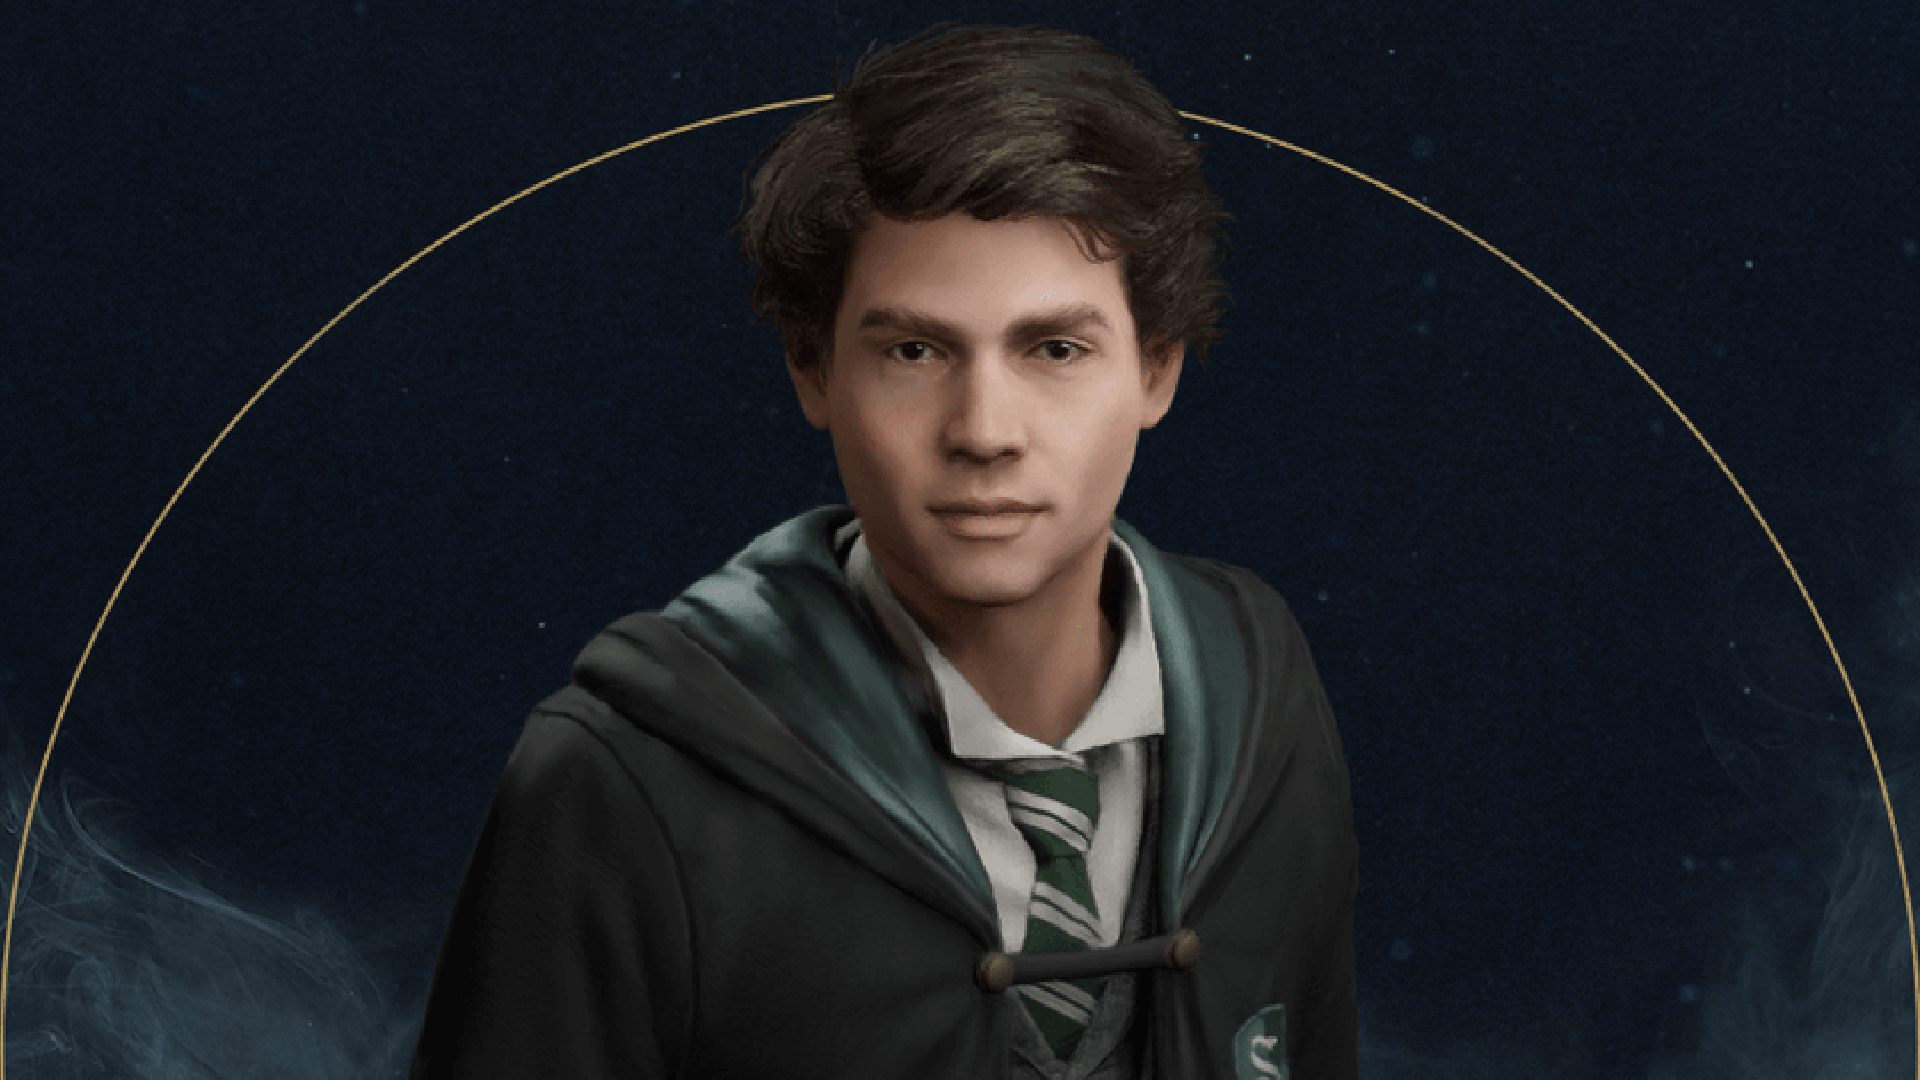 Personajes heredados de Hogwarts: se puede ver a Sebastian